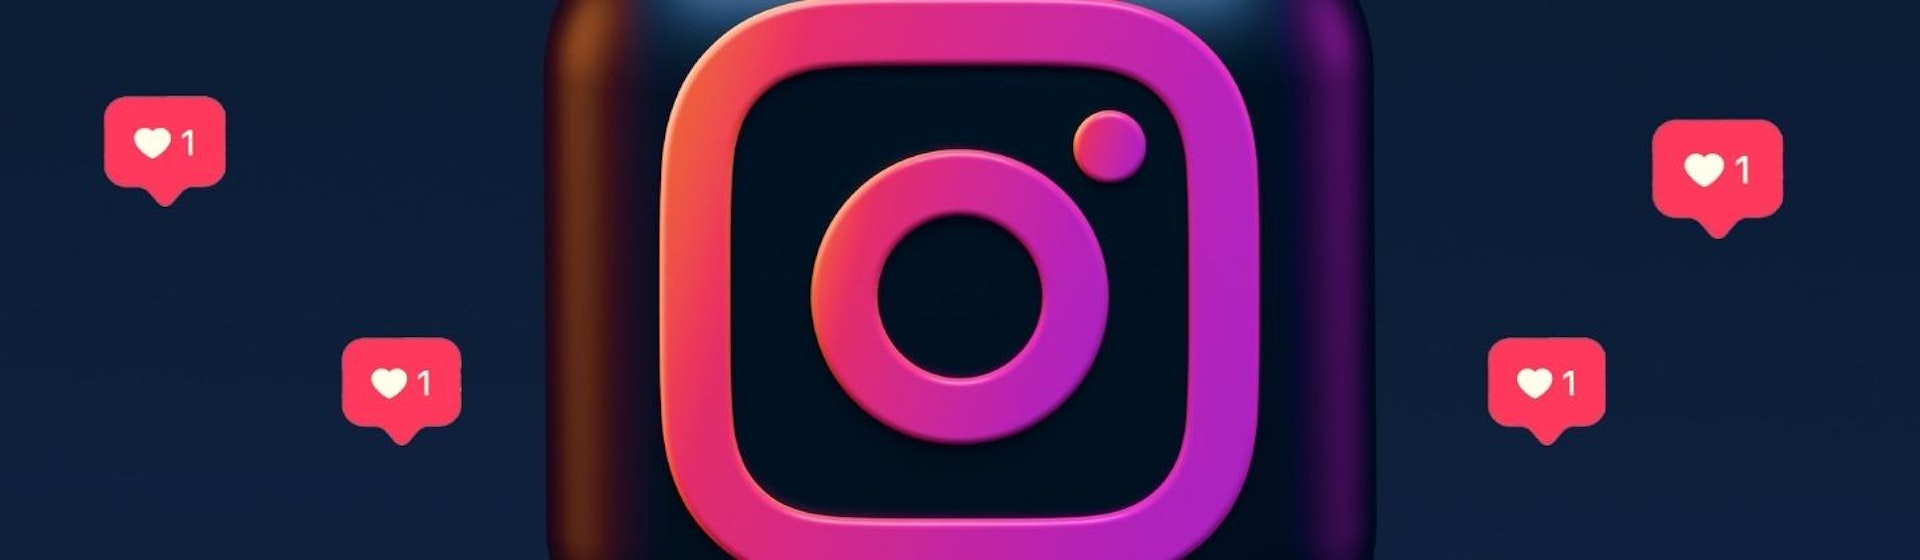 La nueva versión de Instagram ocultaría los likes